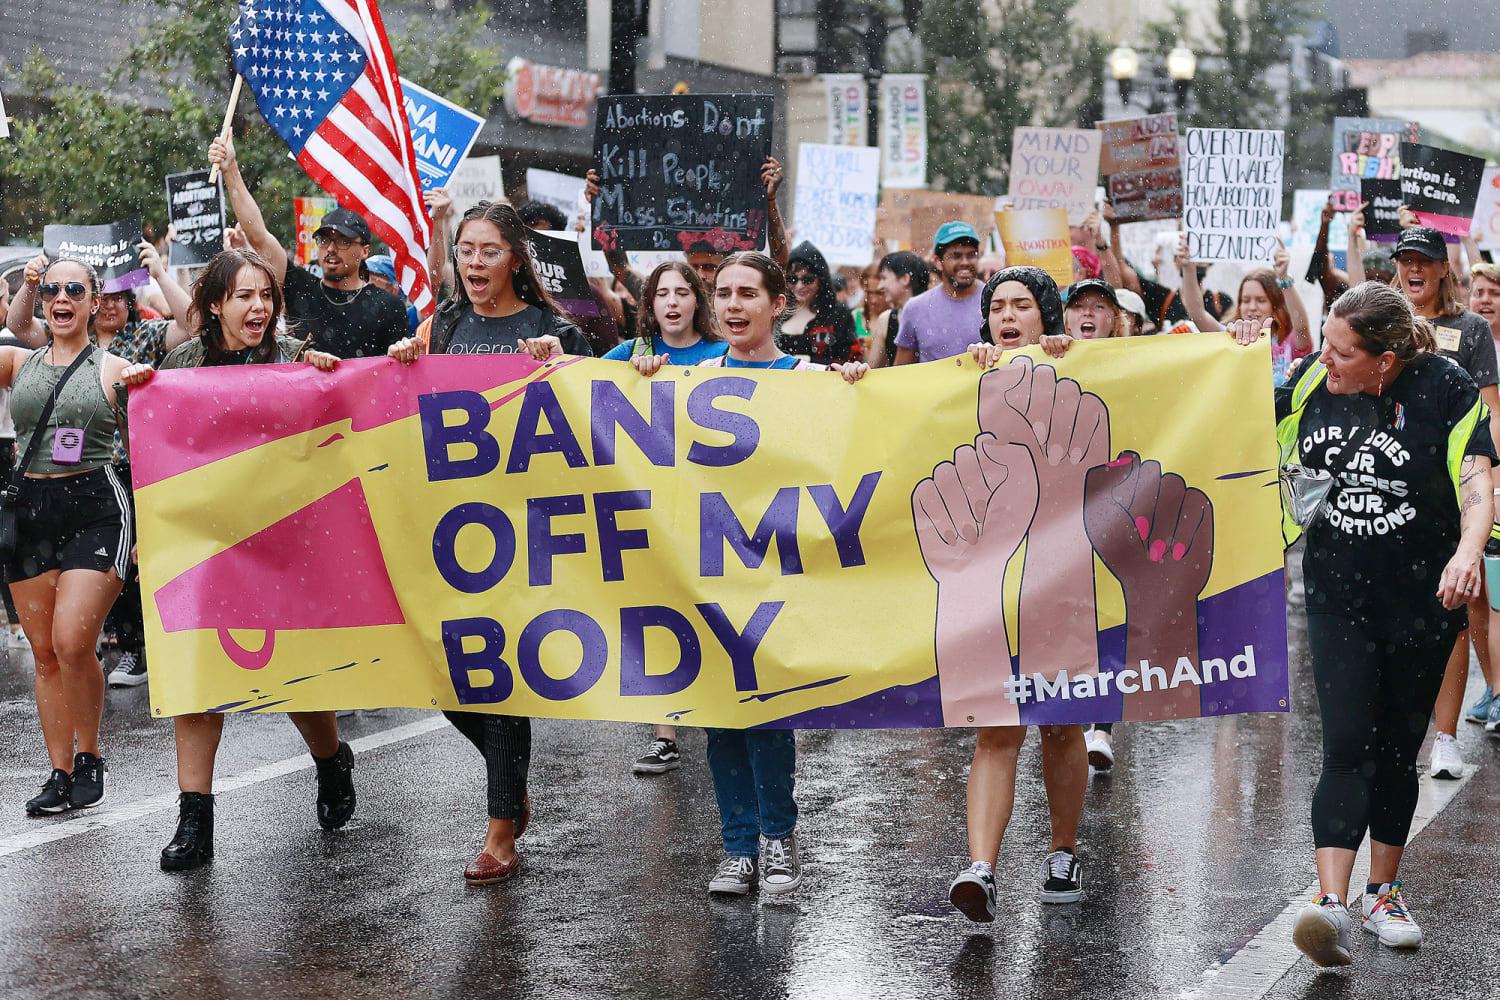 Hyn në fuqi ndalimi i aborteve pas gjashtë javëve shtatzëni në Florida të SHBA!